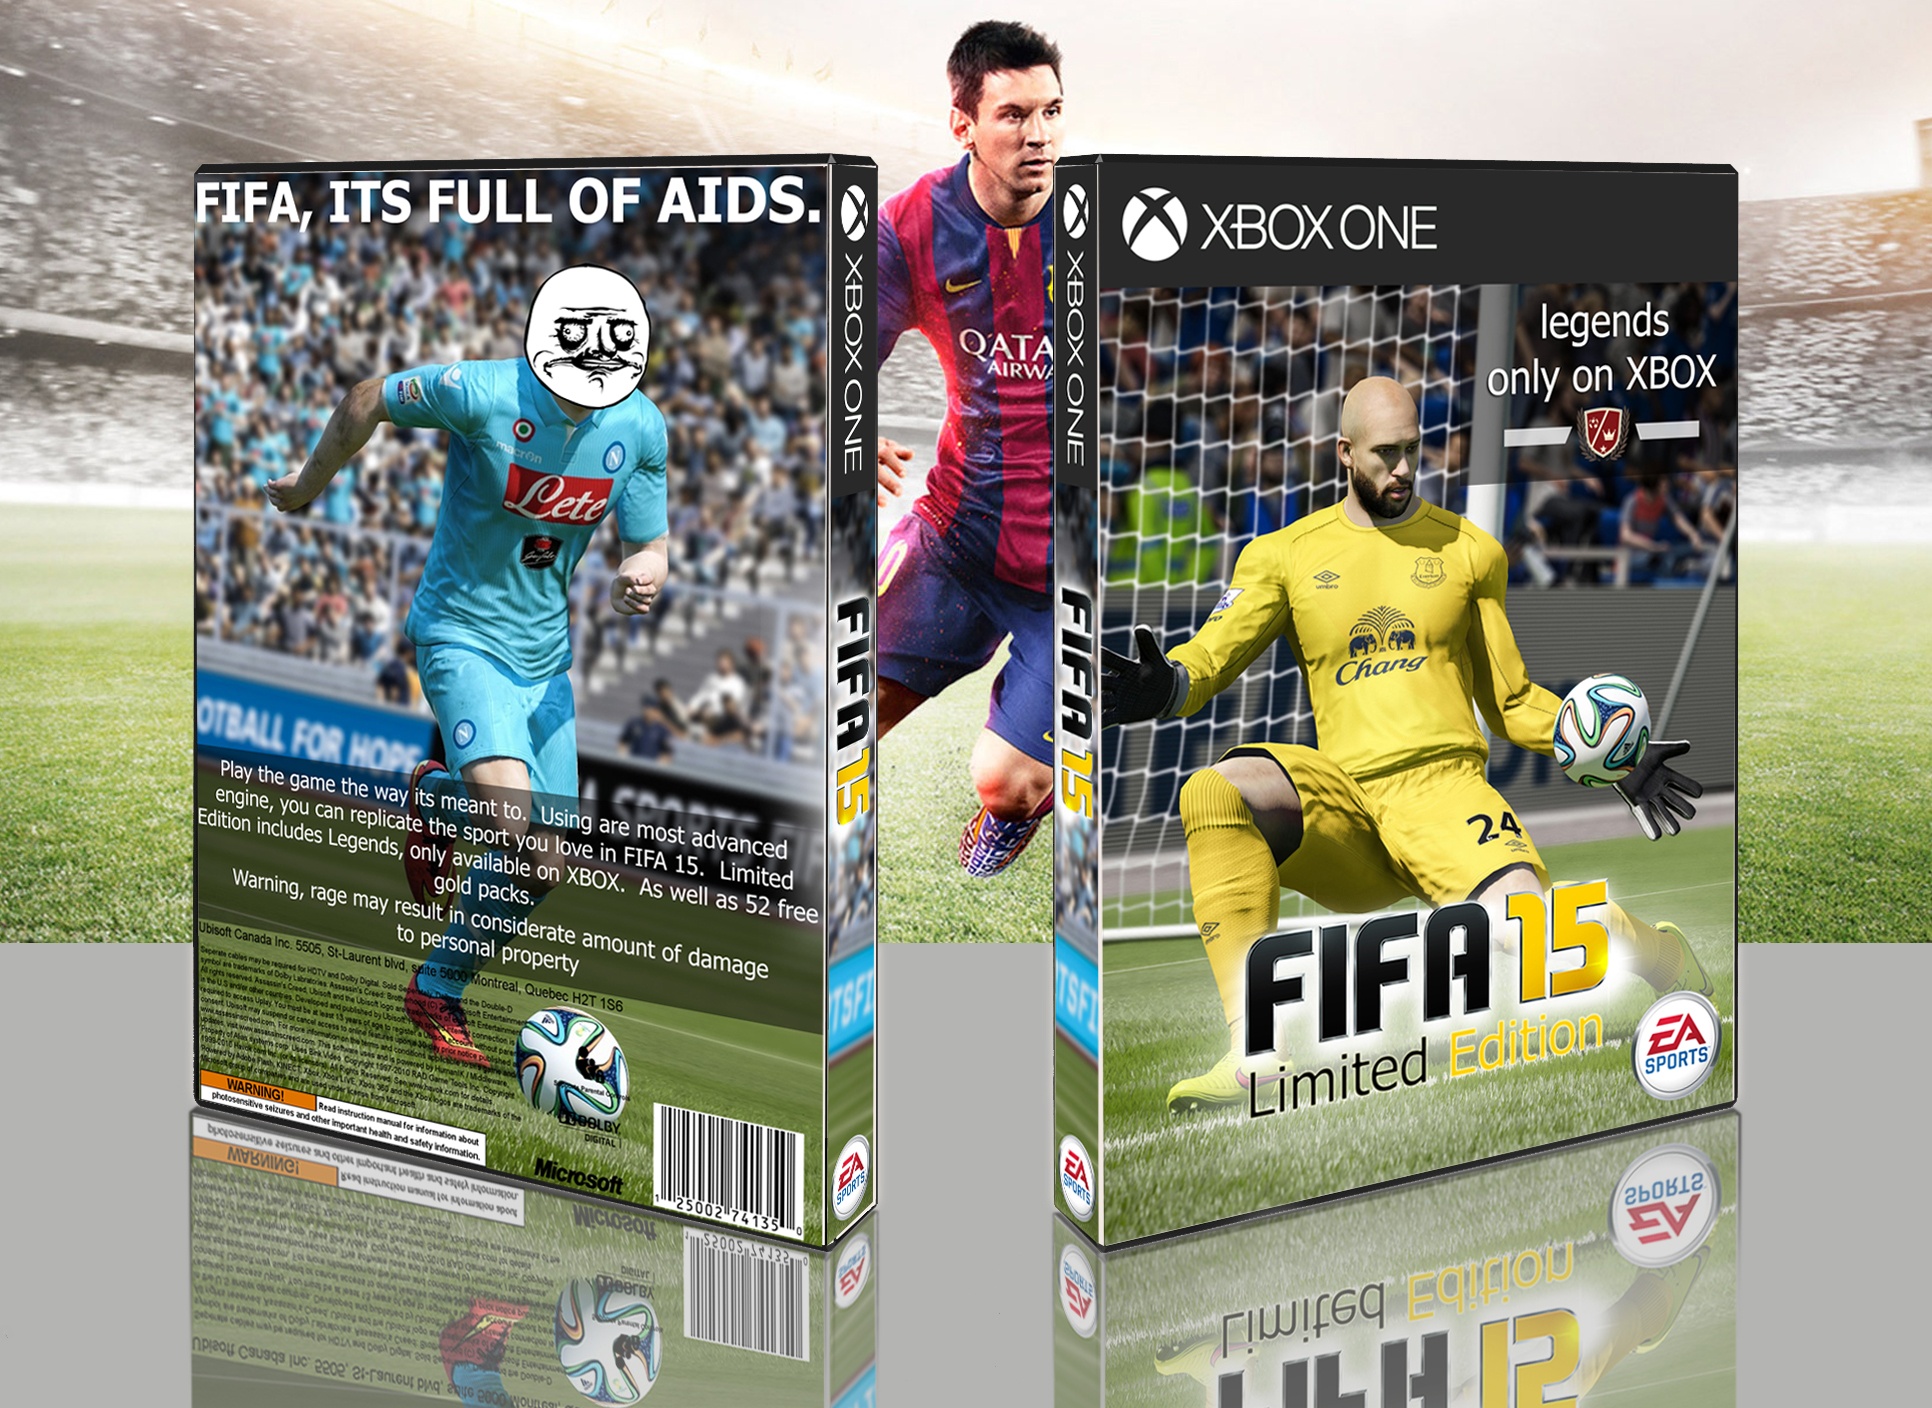 FIFA 15 box cover